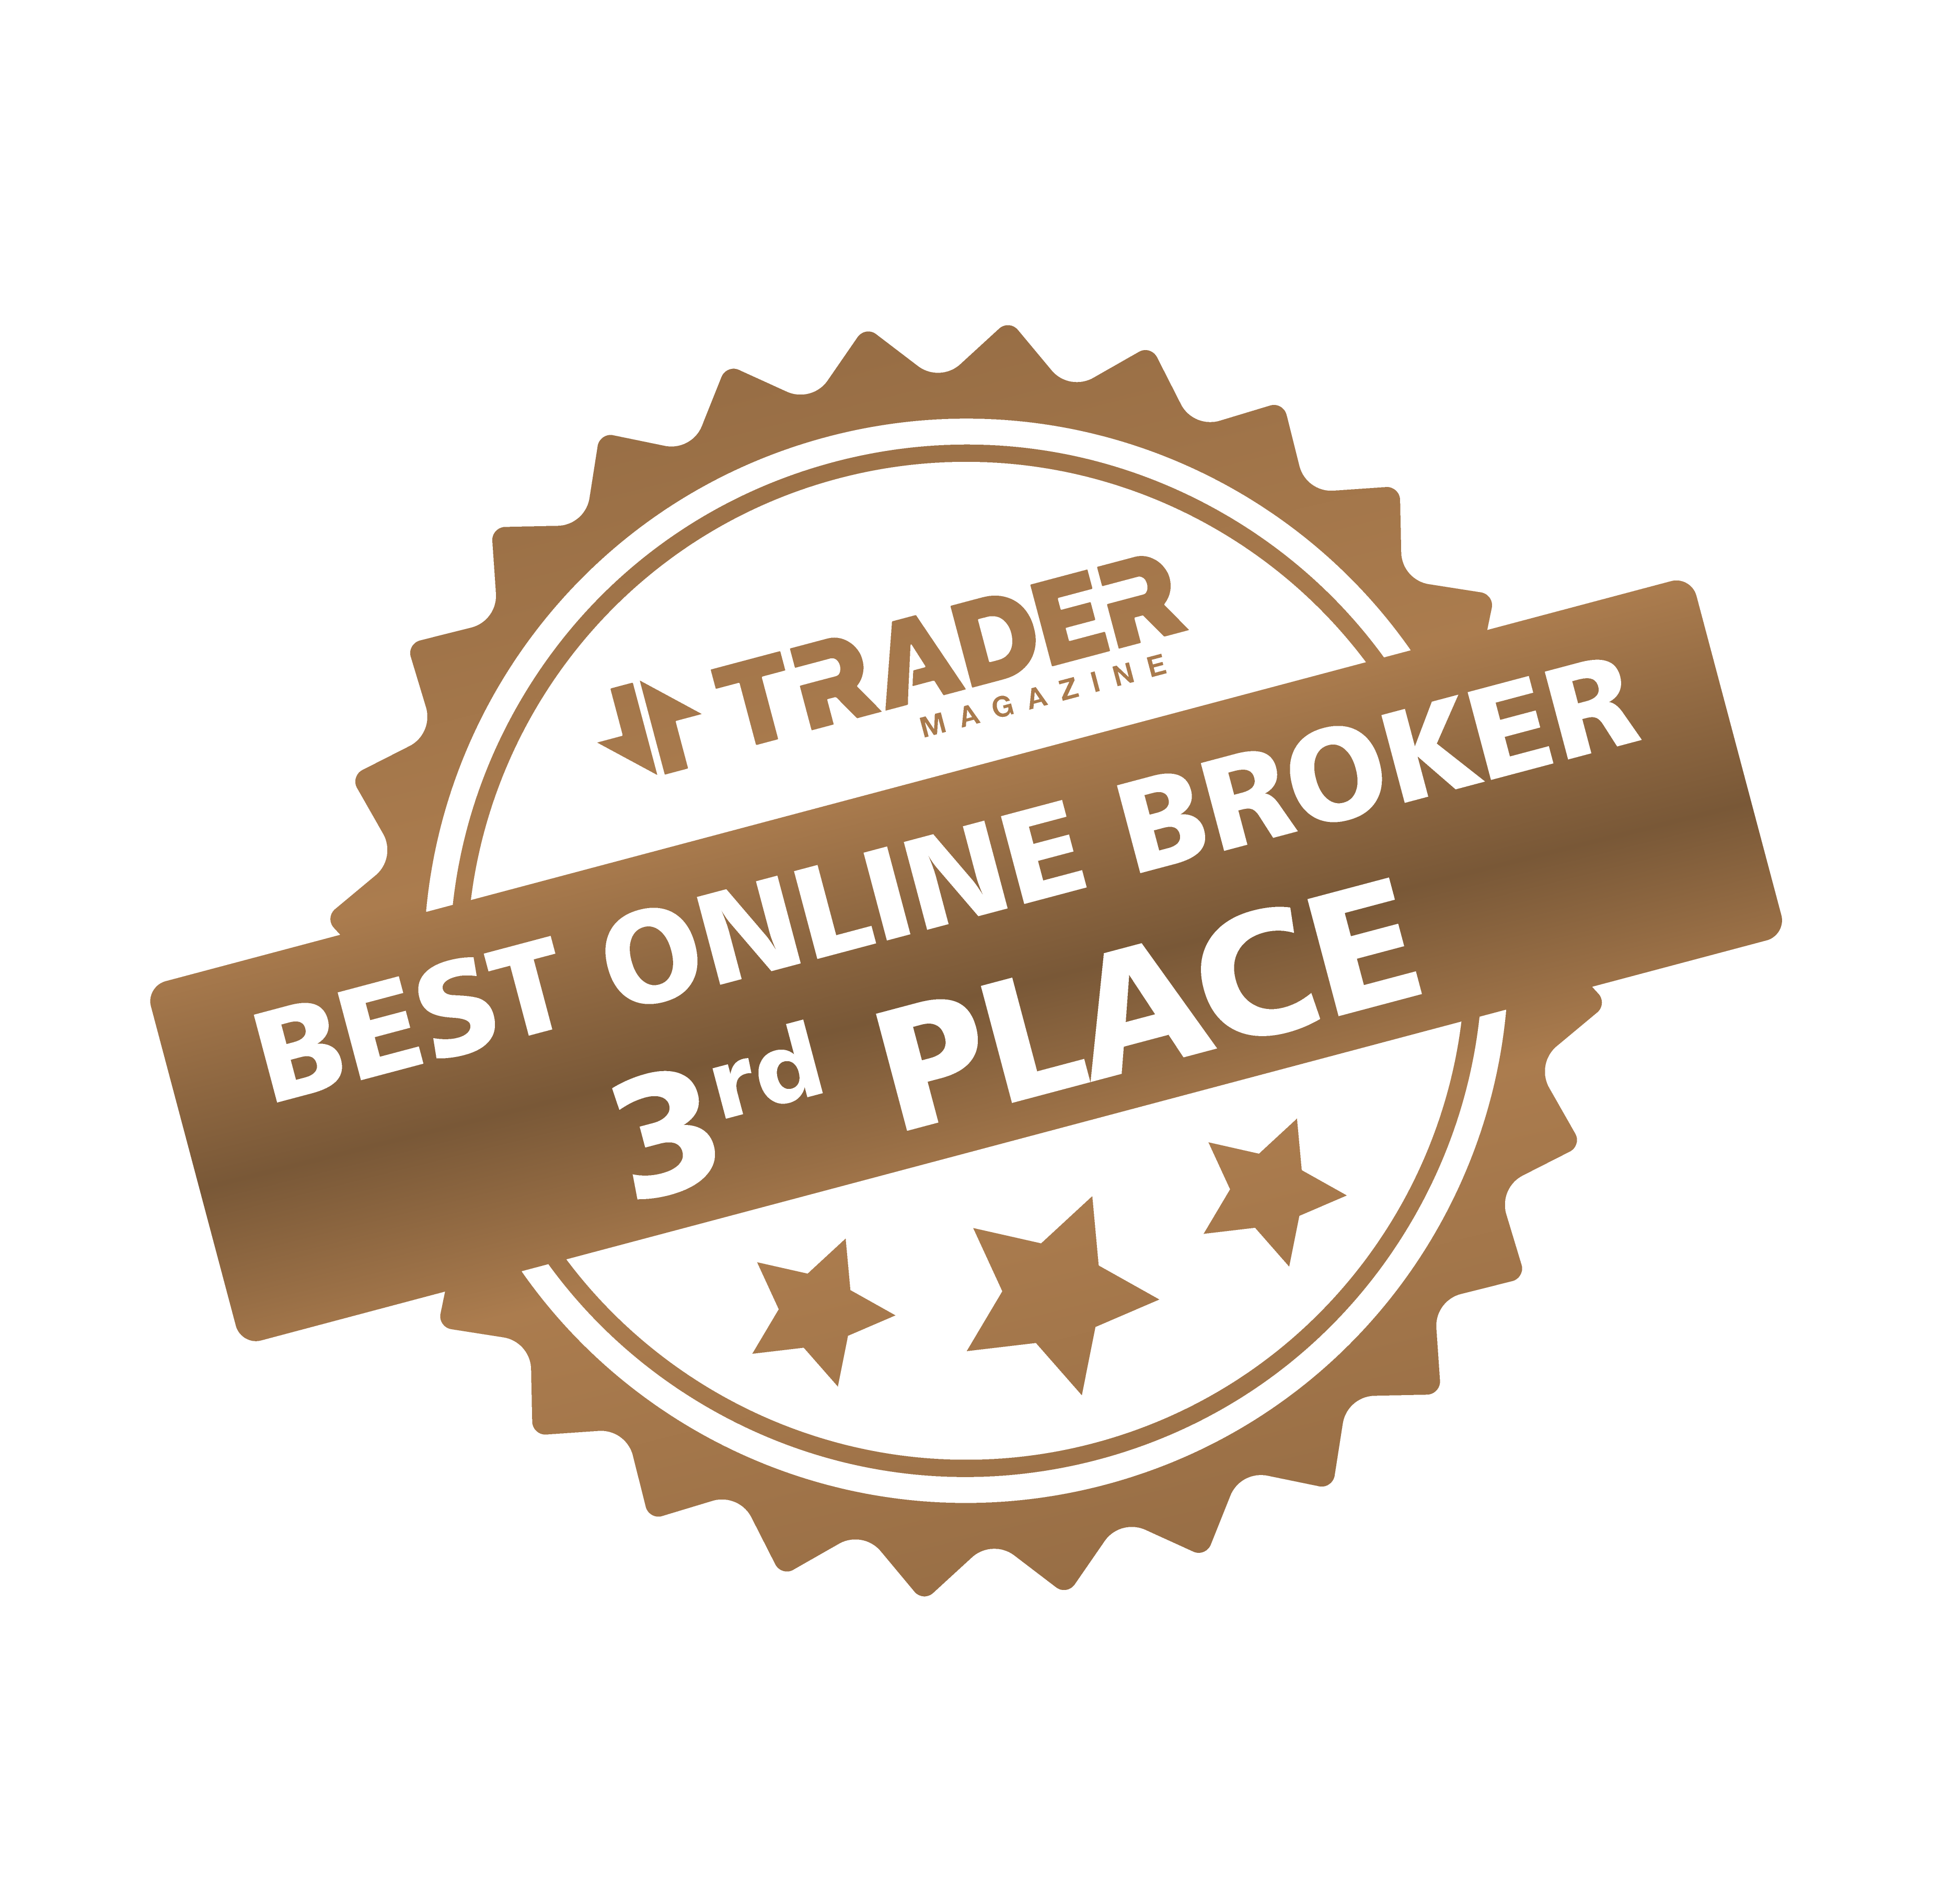 حصل Golden Brokers على المرتبة الثالثة في استطلاع أفضل وسيط عبر الإنترنت